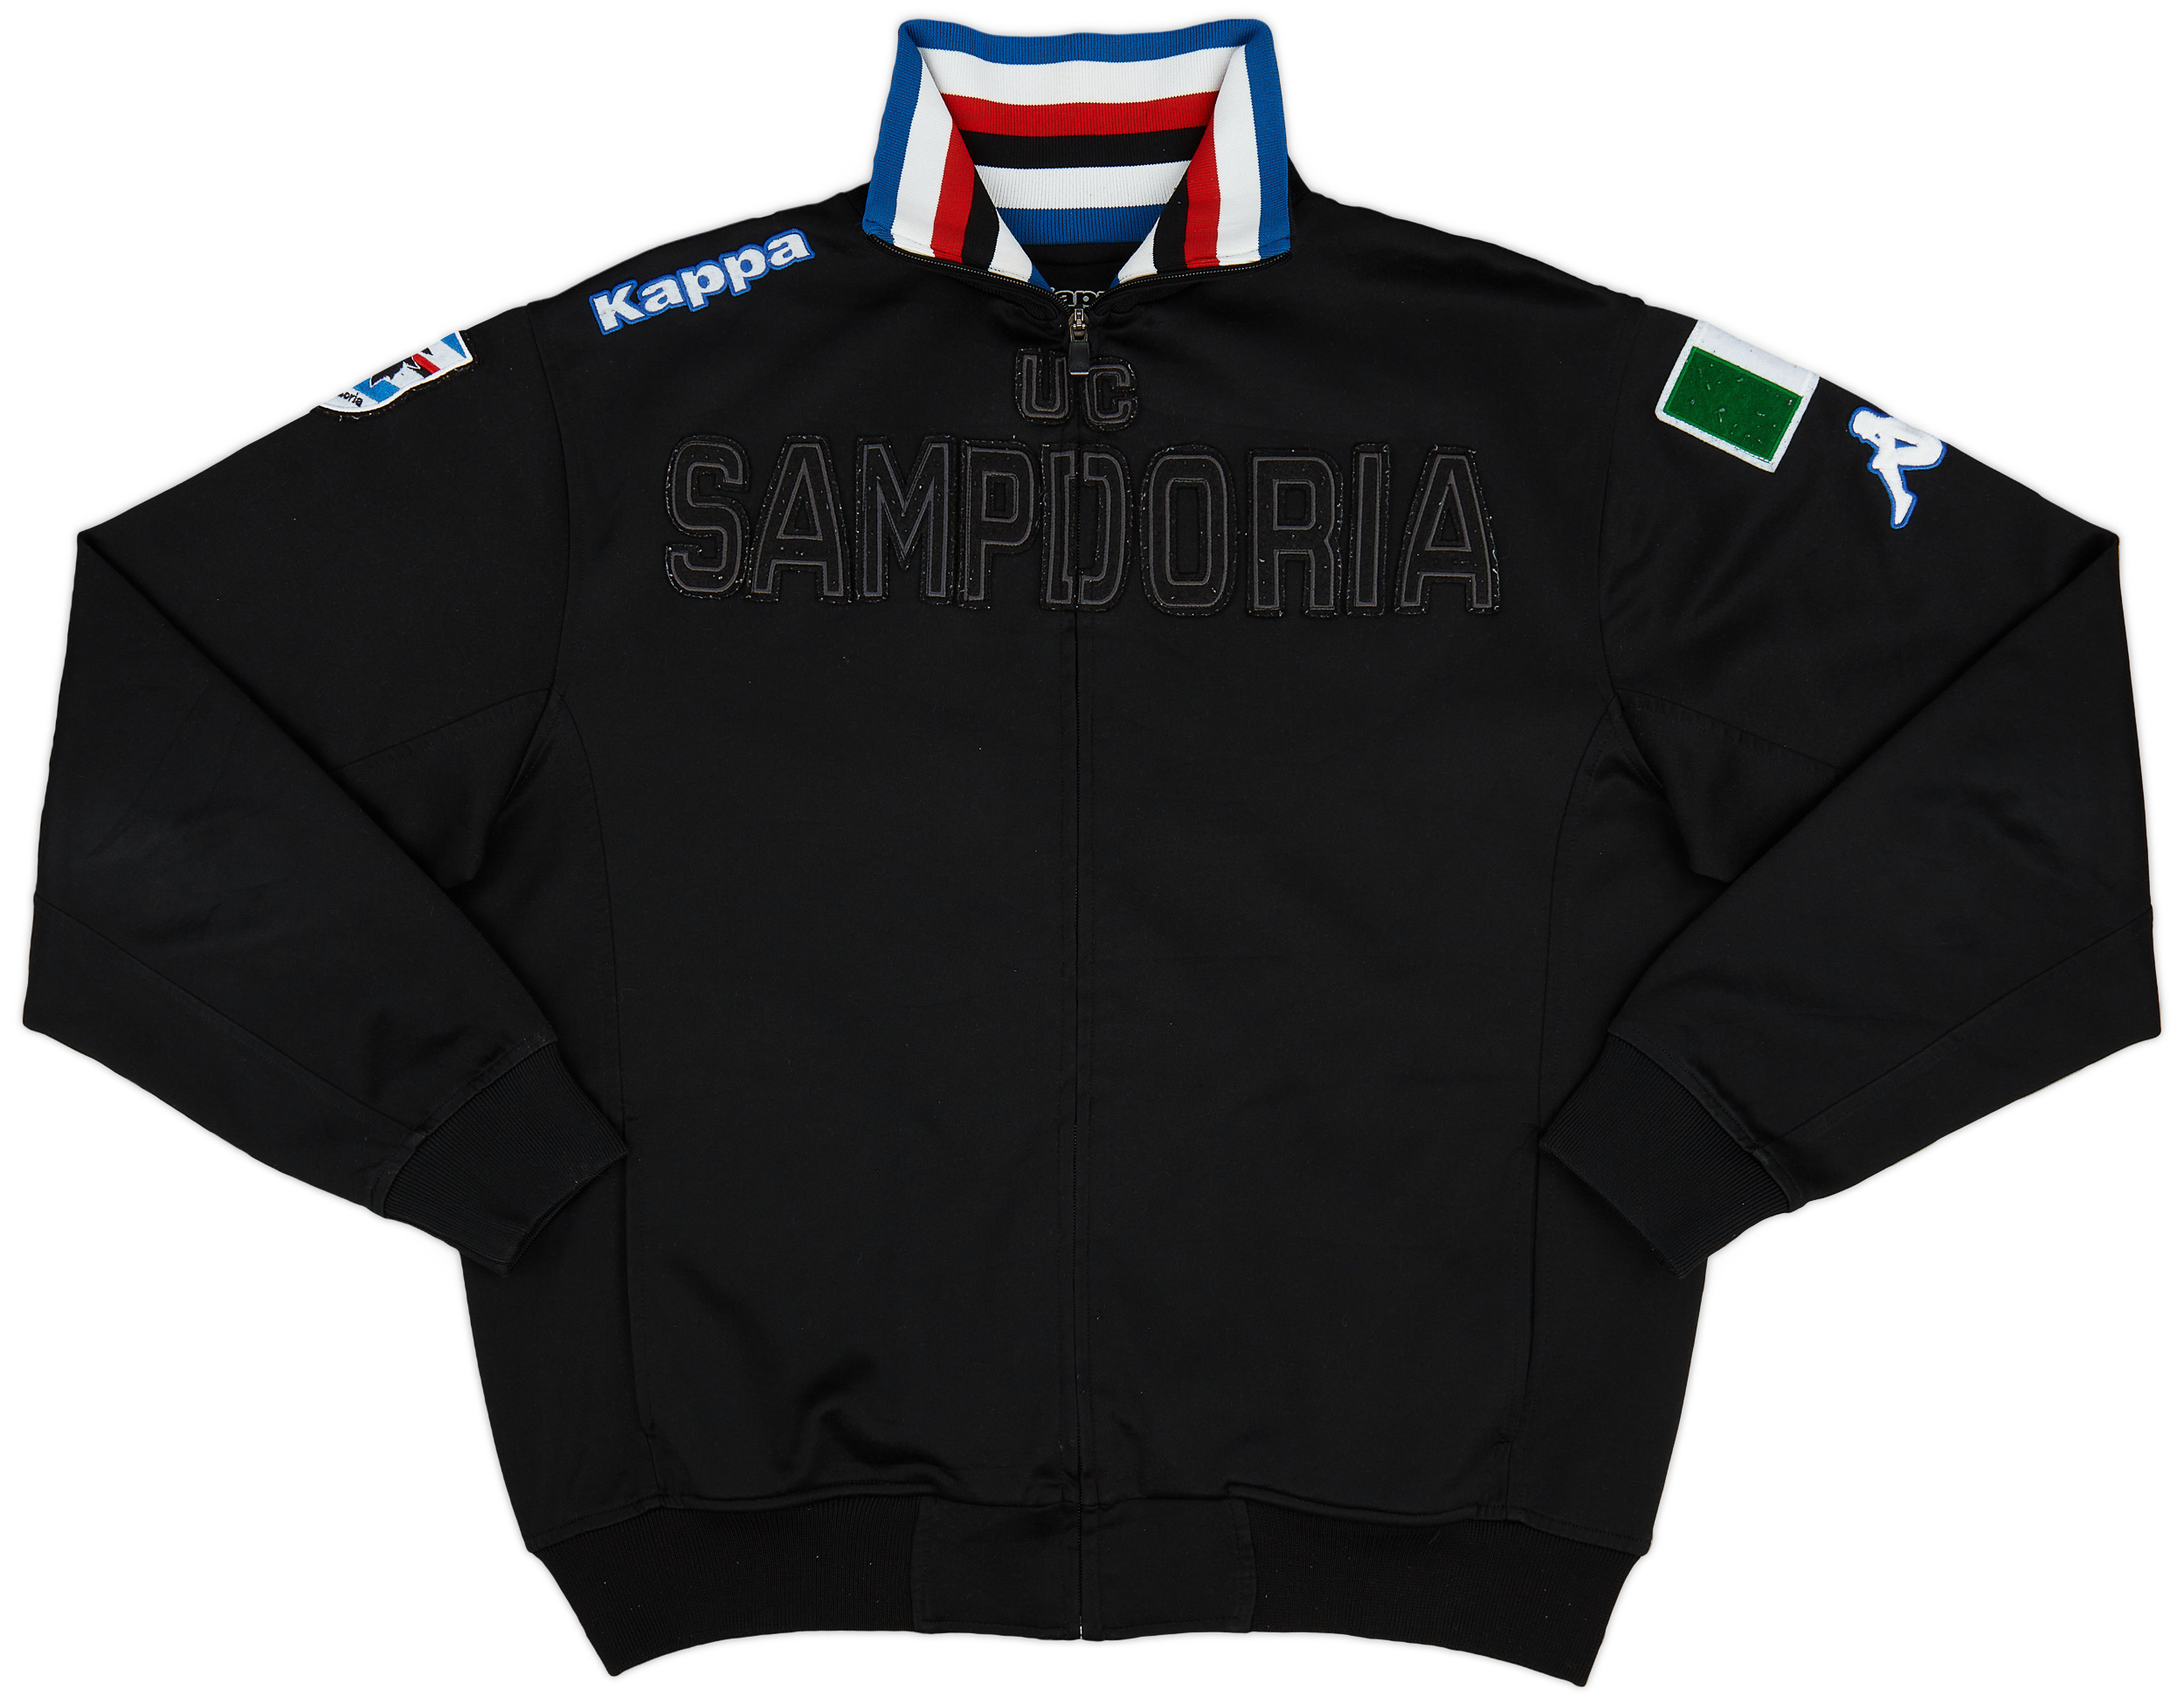 2010s Sampdoria Kappa Track Jacket - Excellent 8/10 - (XL)